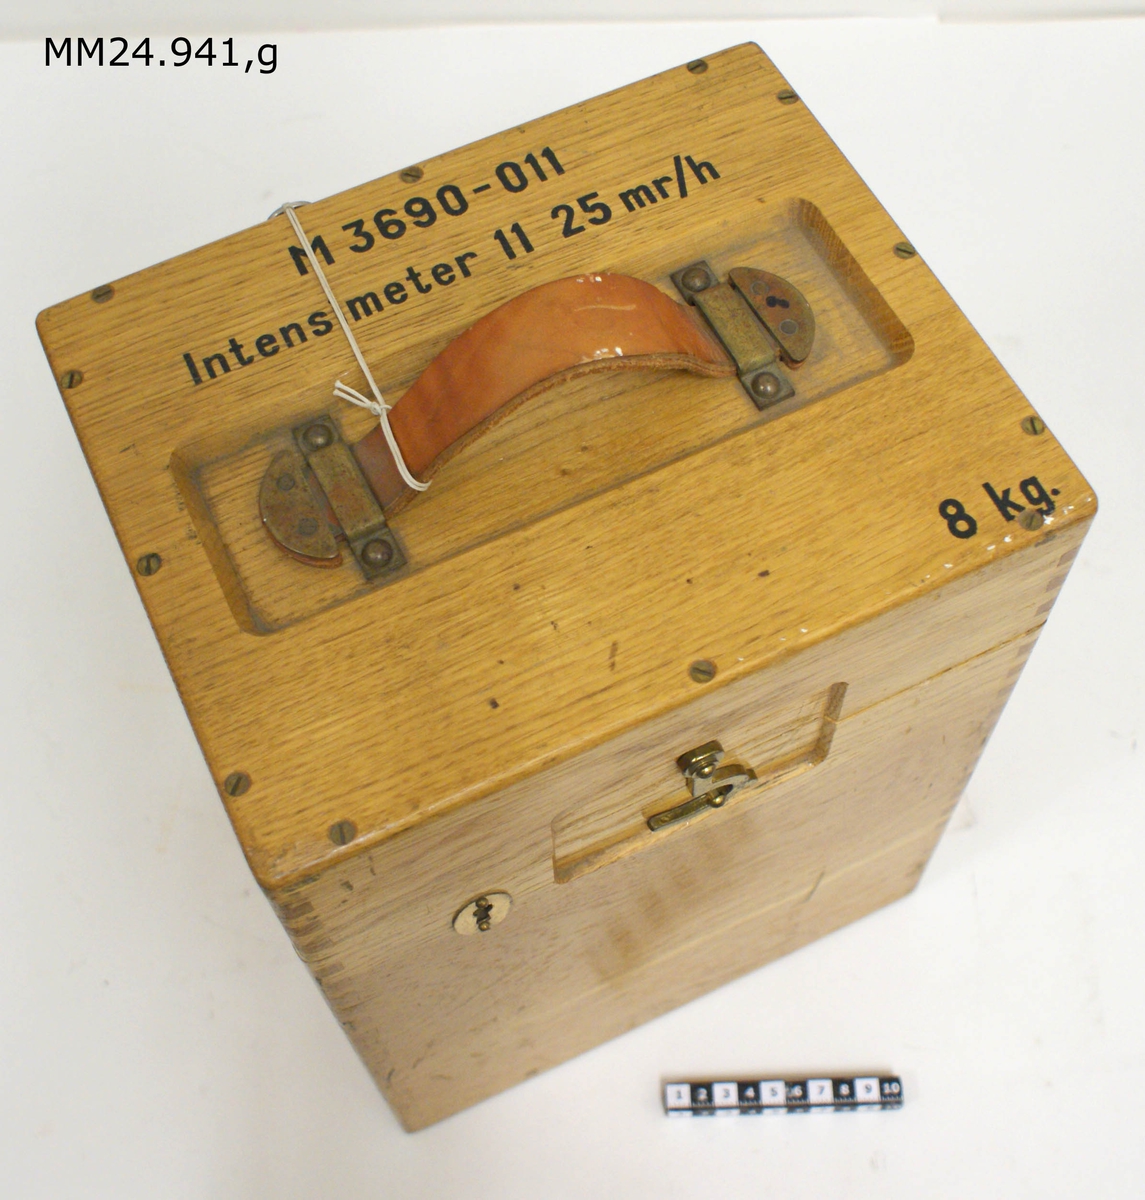 Rektangulär låda i ljust trä med lock. På framsidan hasp och lås. På locket handtag i läder samt följande text:

M3690-011
Intensimeter 11 25 mr/h
8 kg

Inuti lådan två fack samt spännrem att fästa platspåsanr (e) i.